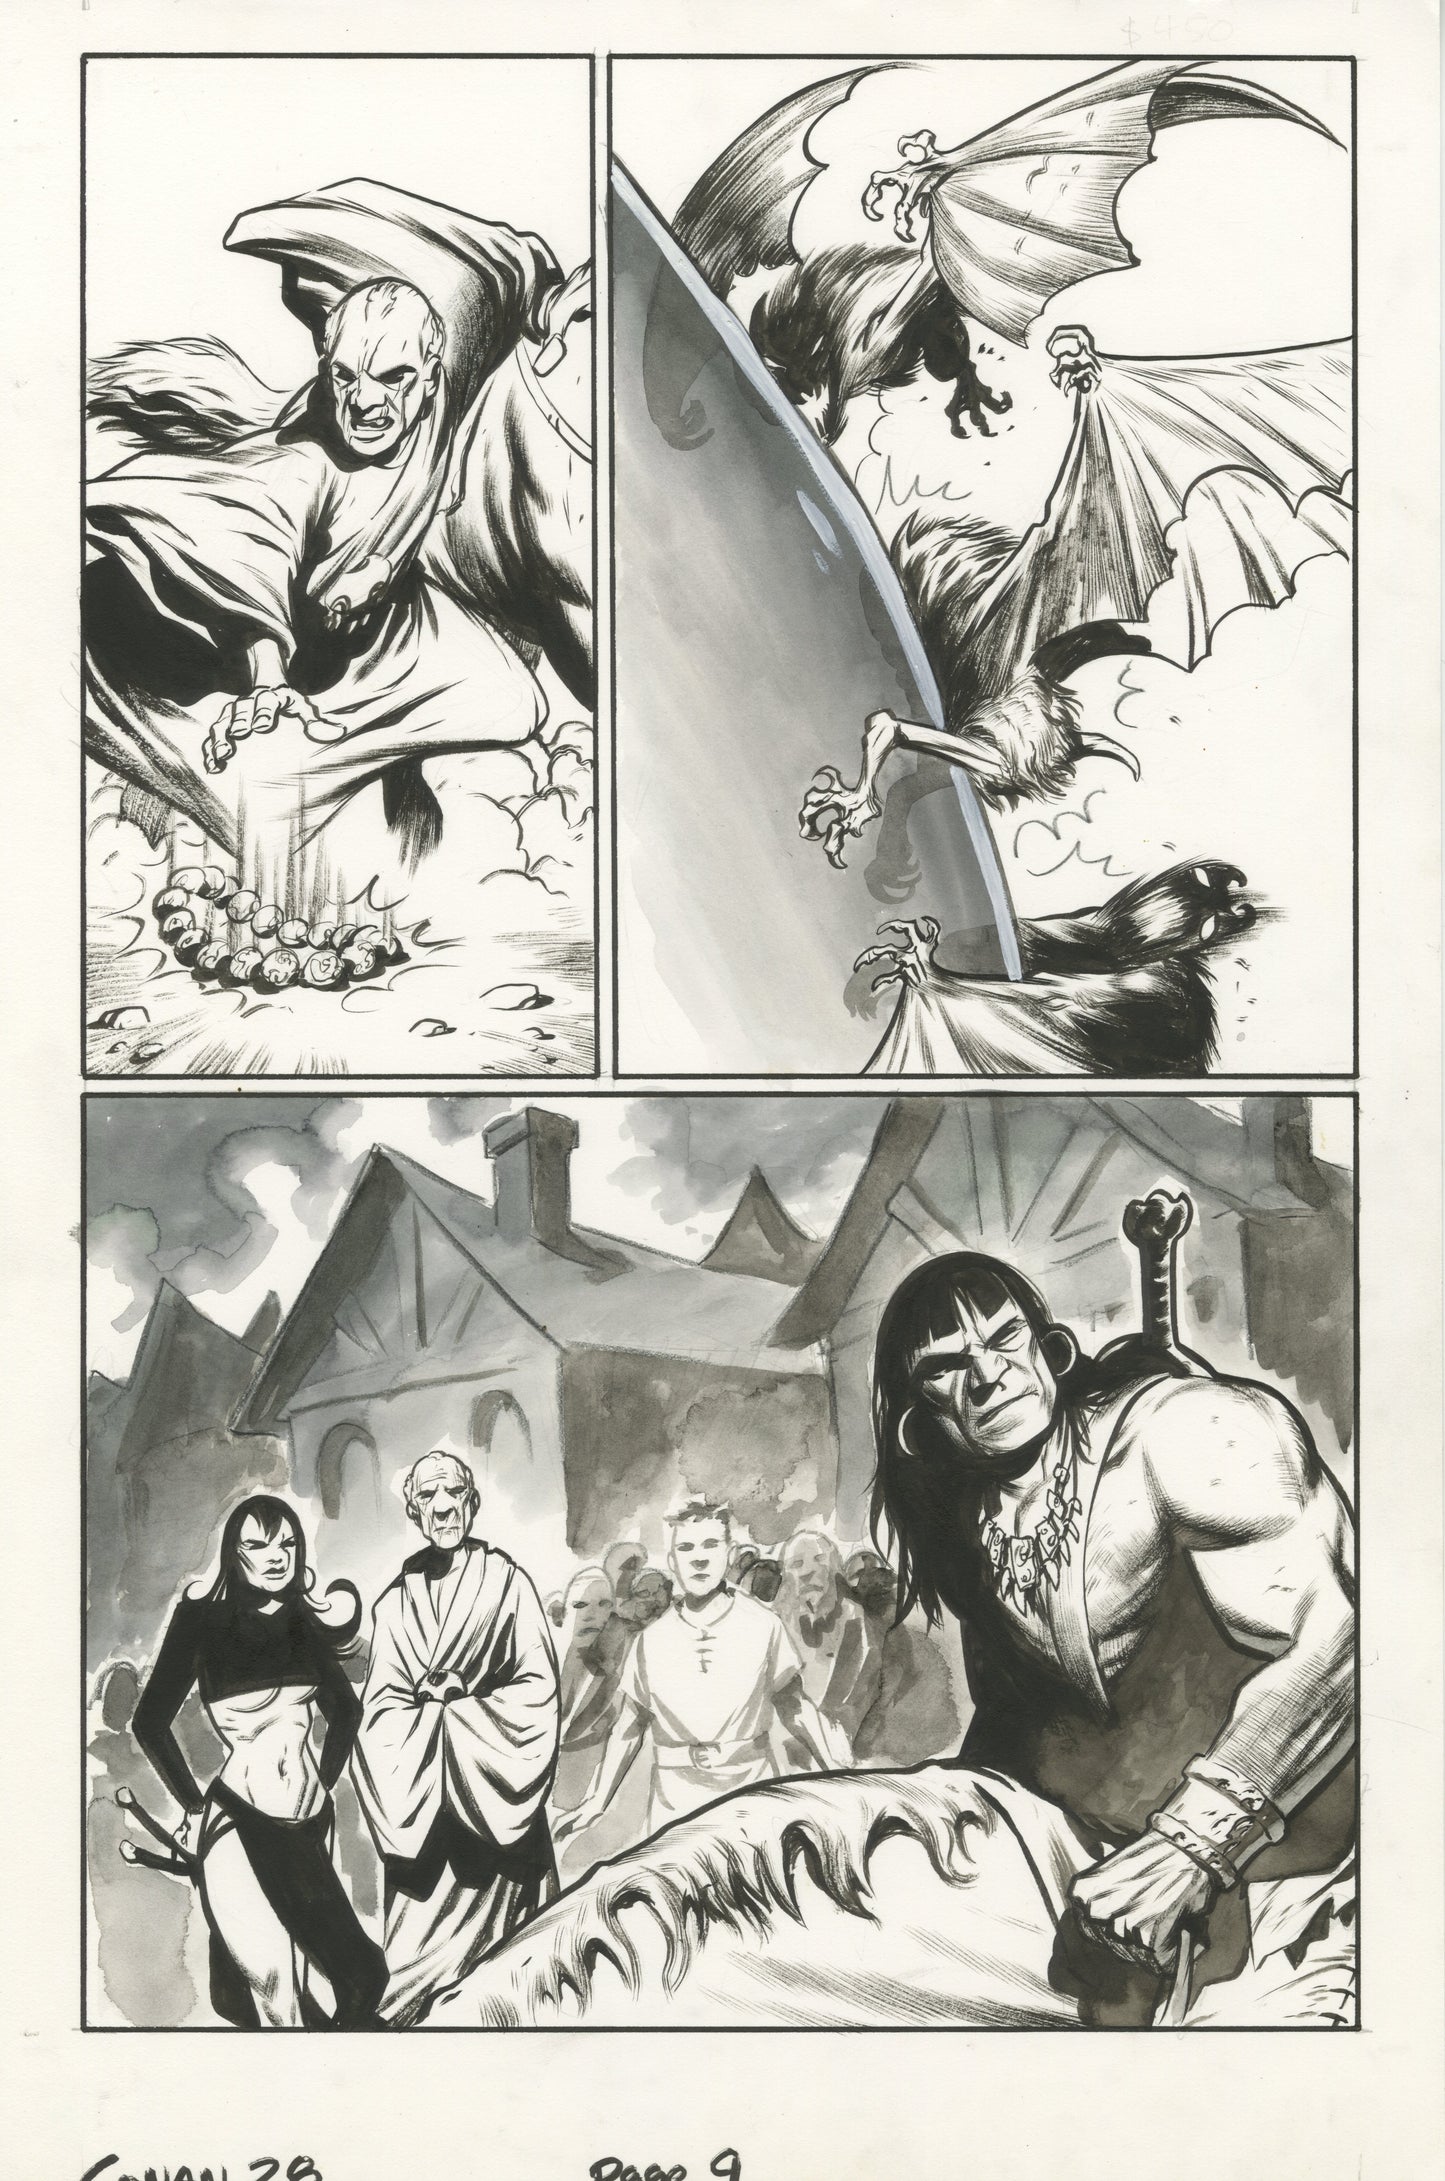 Conan #28, page #09 (2006, Dark Horse)